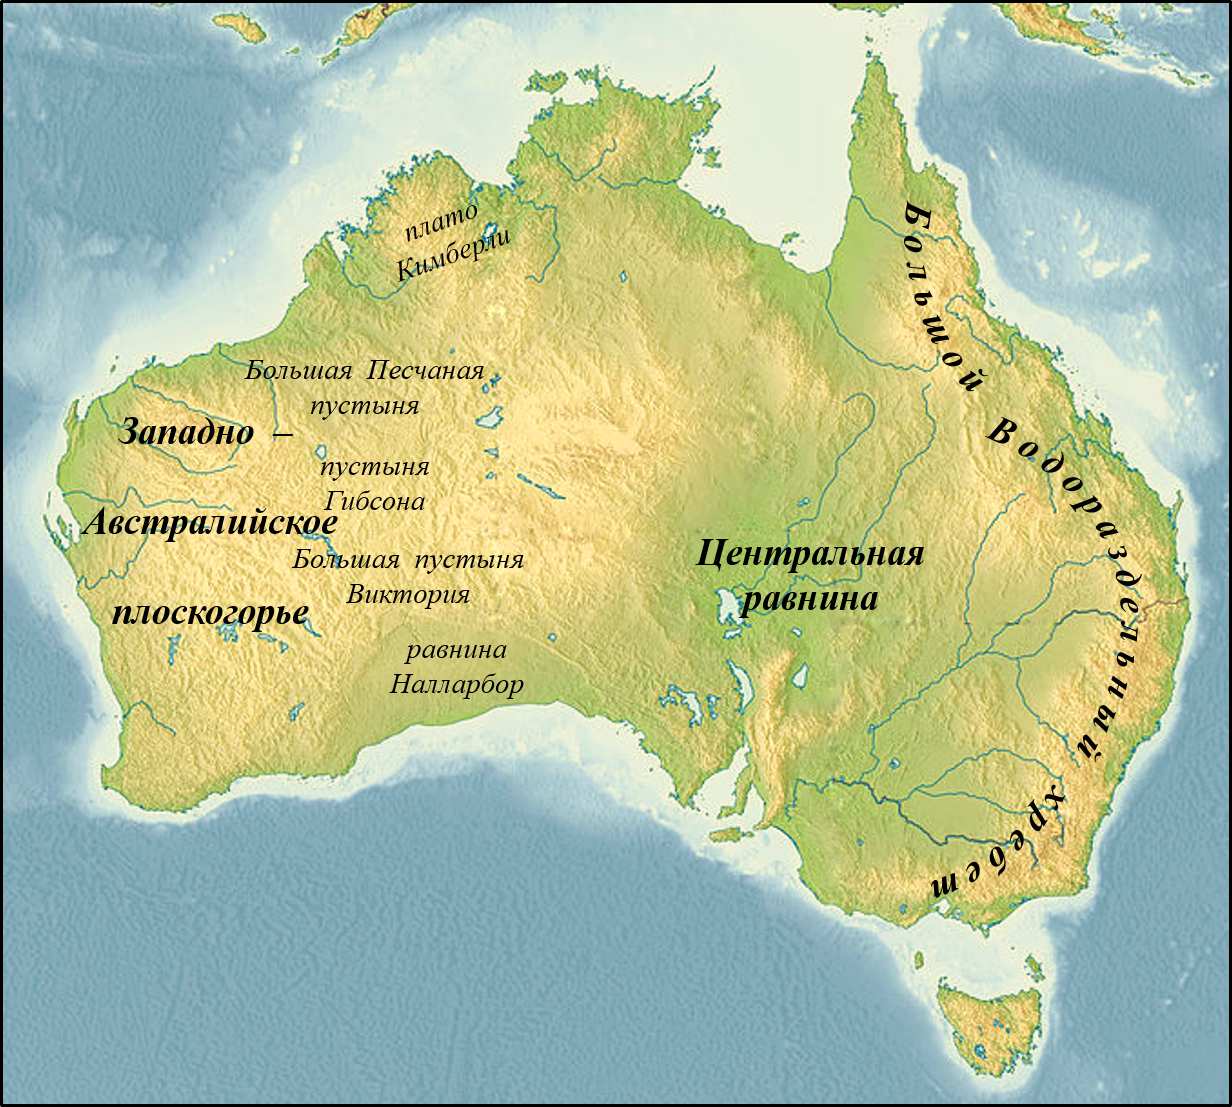 Большой Водораздельный хребет в Австралии на карте. Центральная низменность Австралии на карте Австралии. Название крупных форм рельефа Австралии. Западно австралийское плоскогорье на карте Австралии. Большой водораздельный хребет полушарие